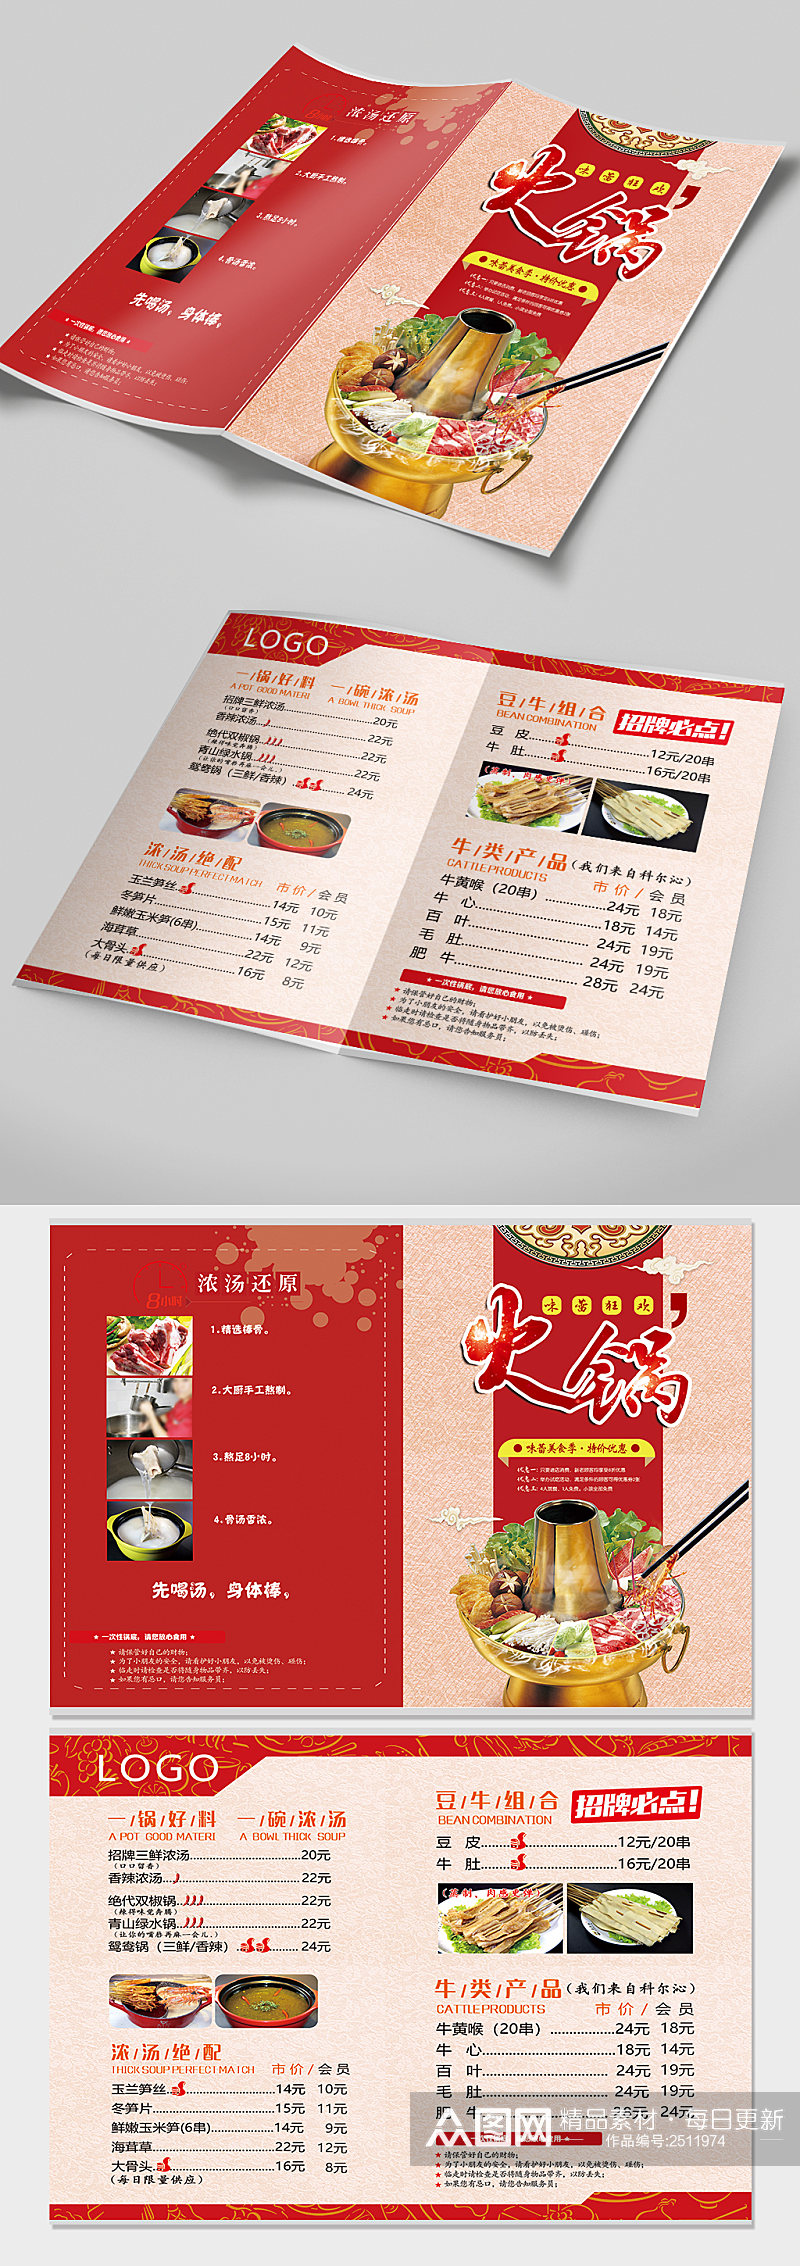 中国红大气简约火锅菜单 菜单折页素材